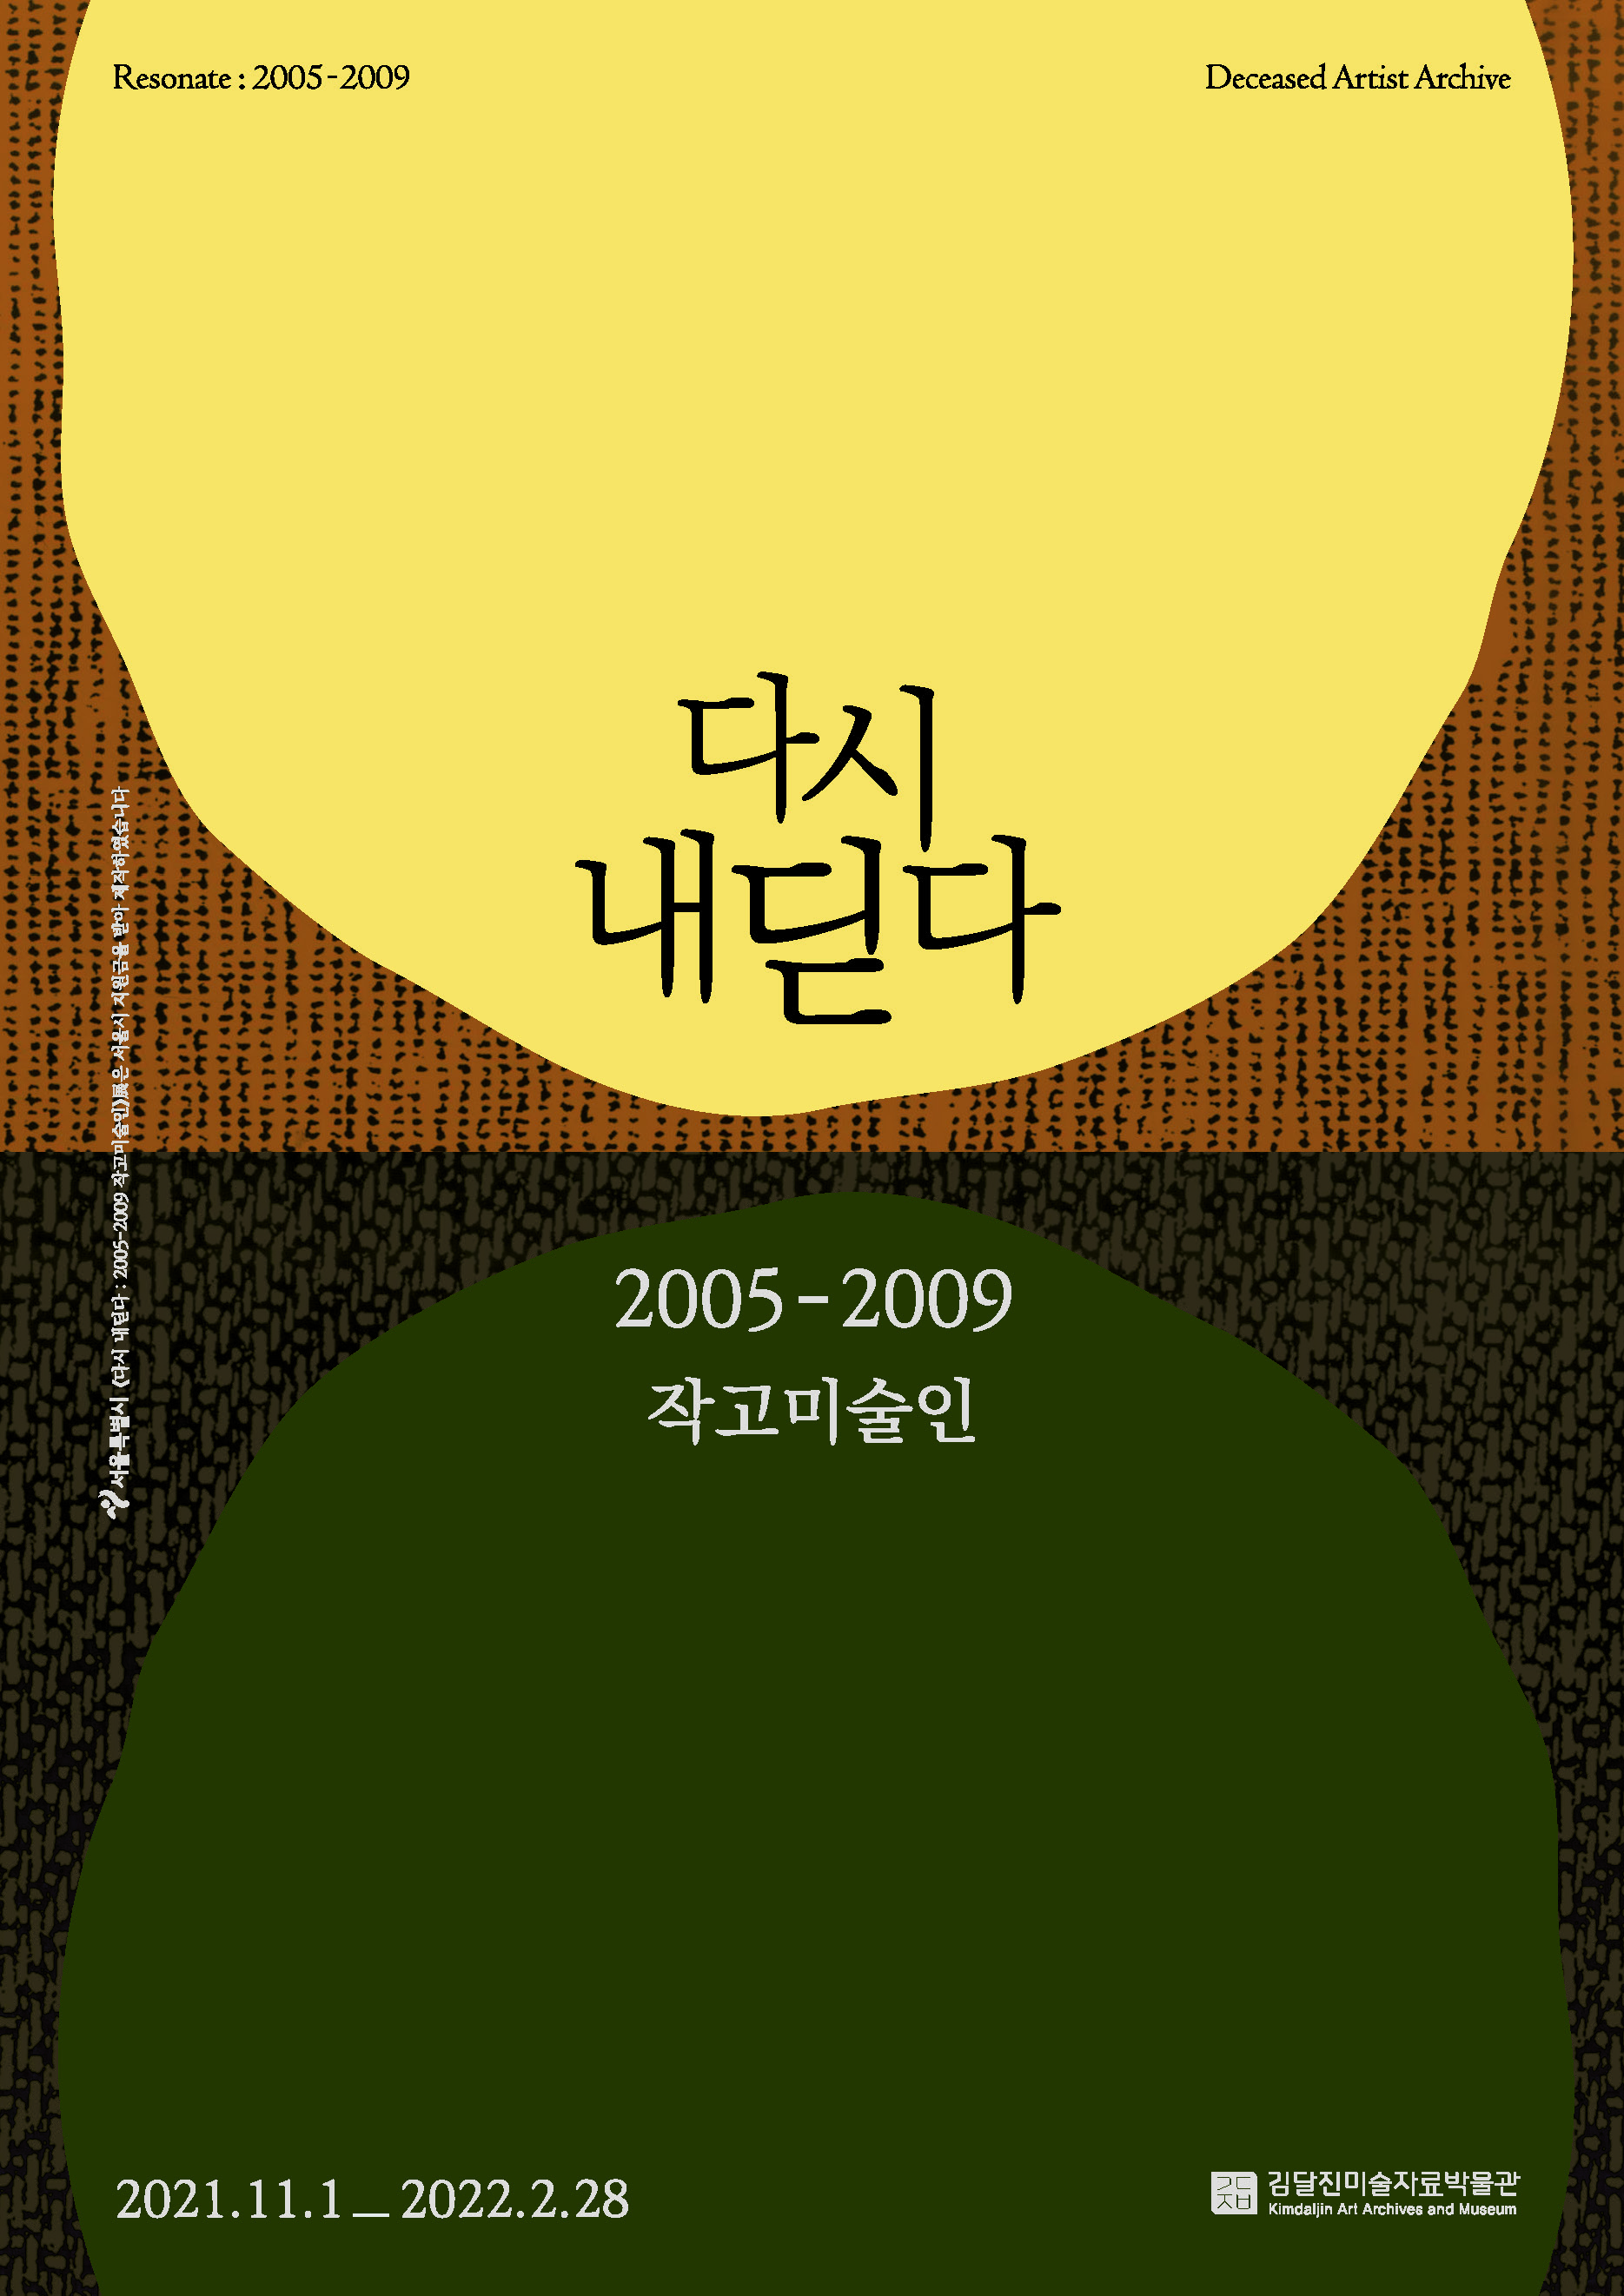 《다시 내딛다: 2005-2009 작고미술인》(2021 하반기 전시) 포스터